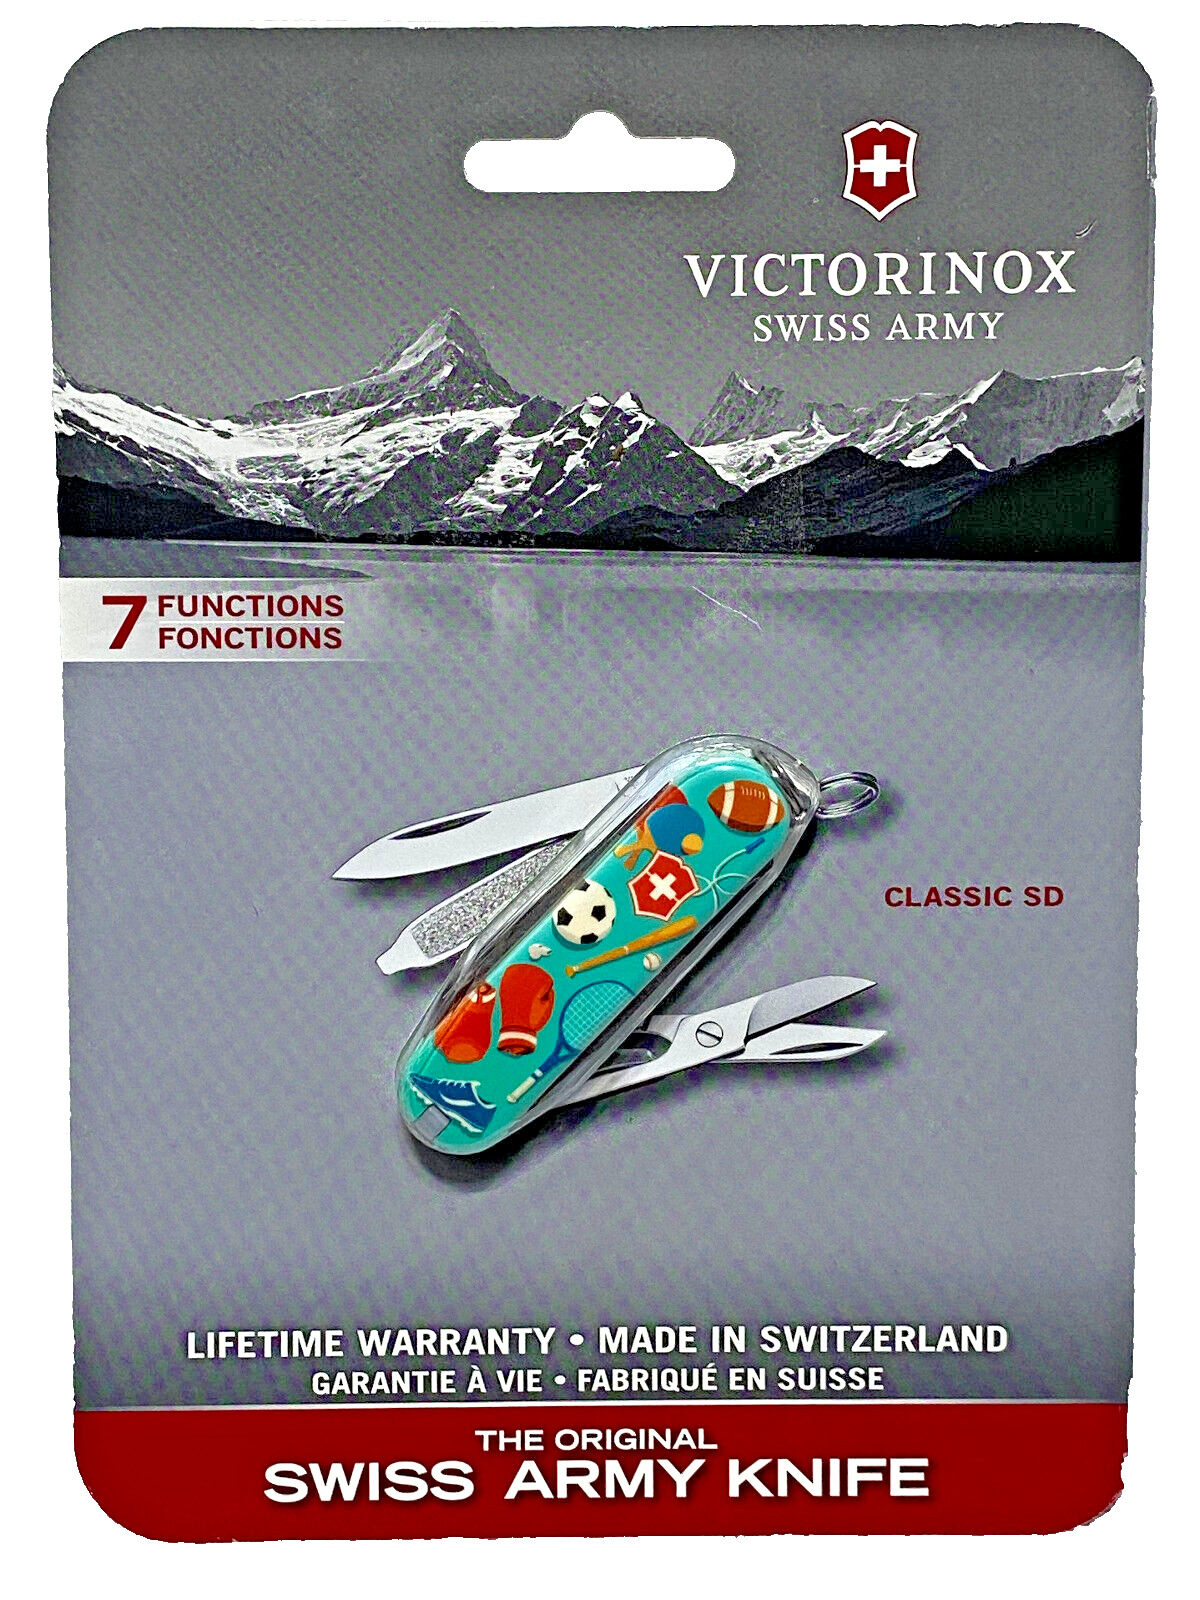 Genuine Victorinox Classic SD Swiss Army Knife - Sports World Lifetime Warranty